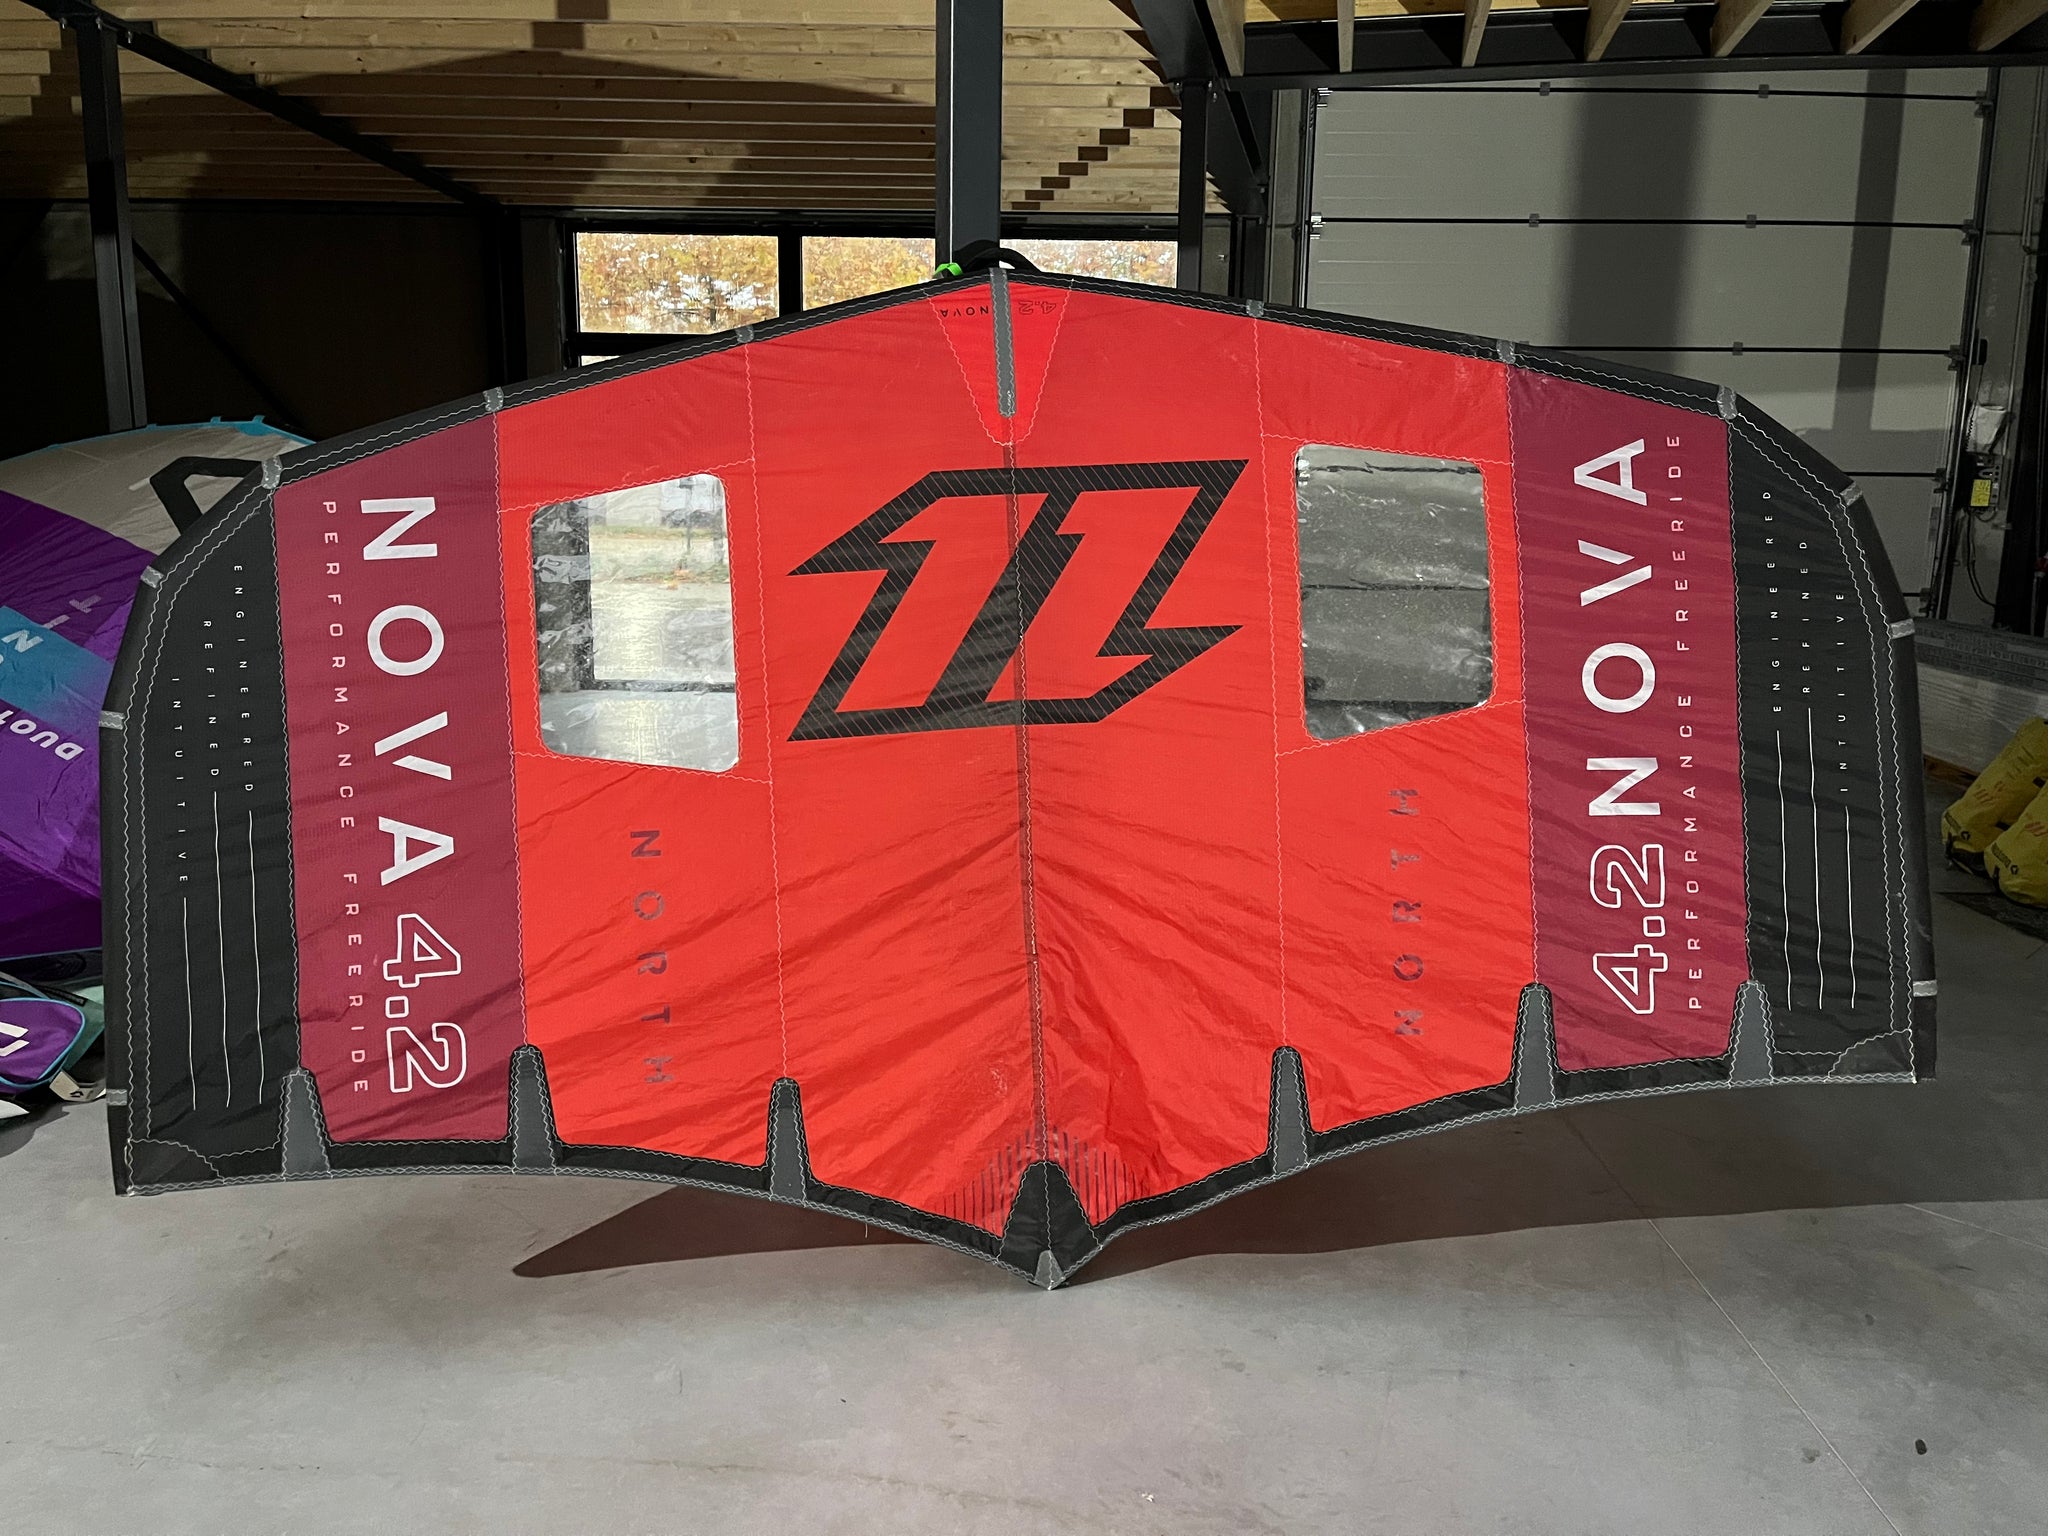 Demo 2022 North Nova Wing - 4.2m (no bag)